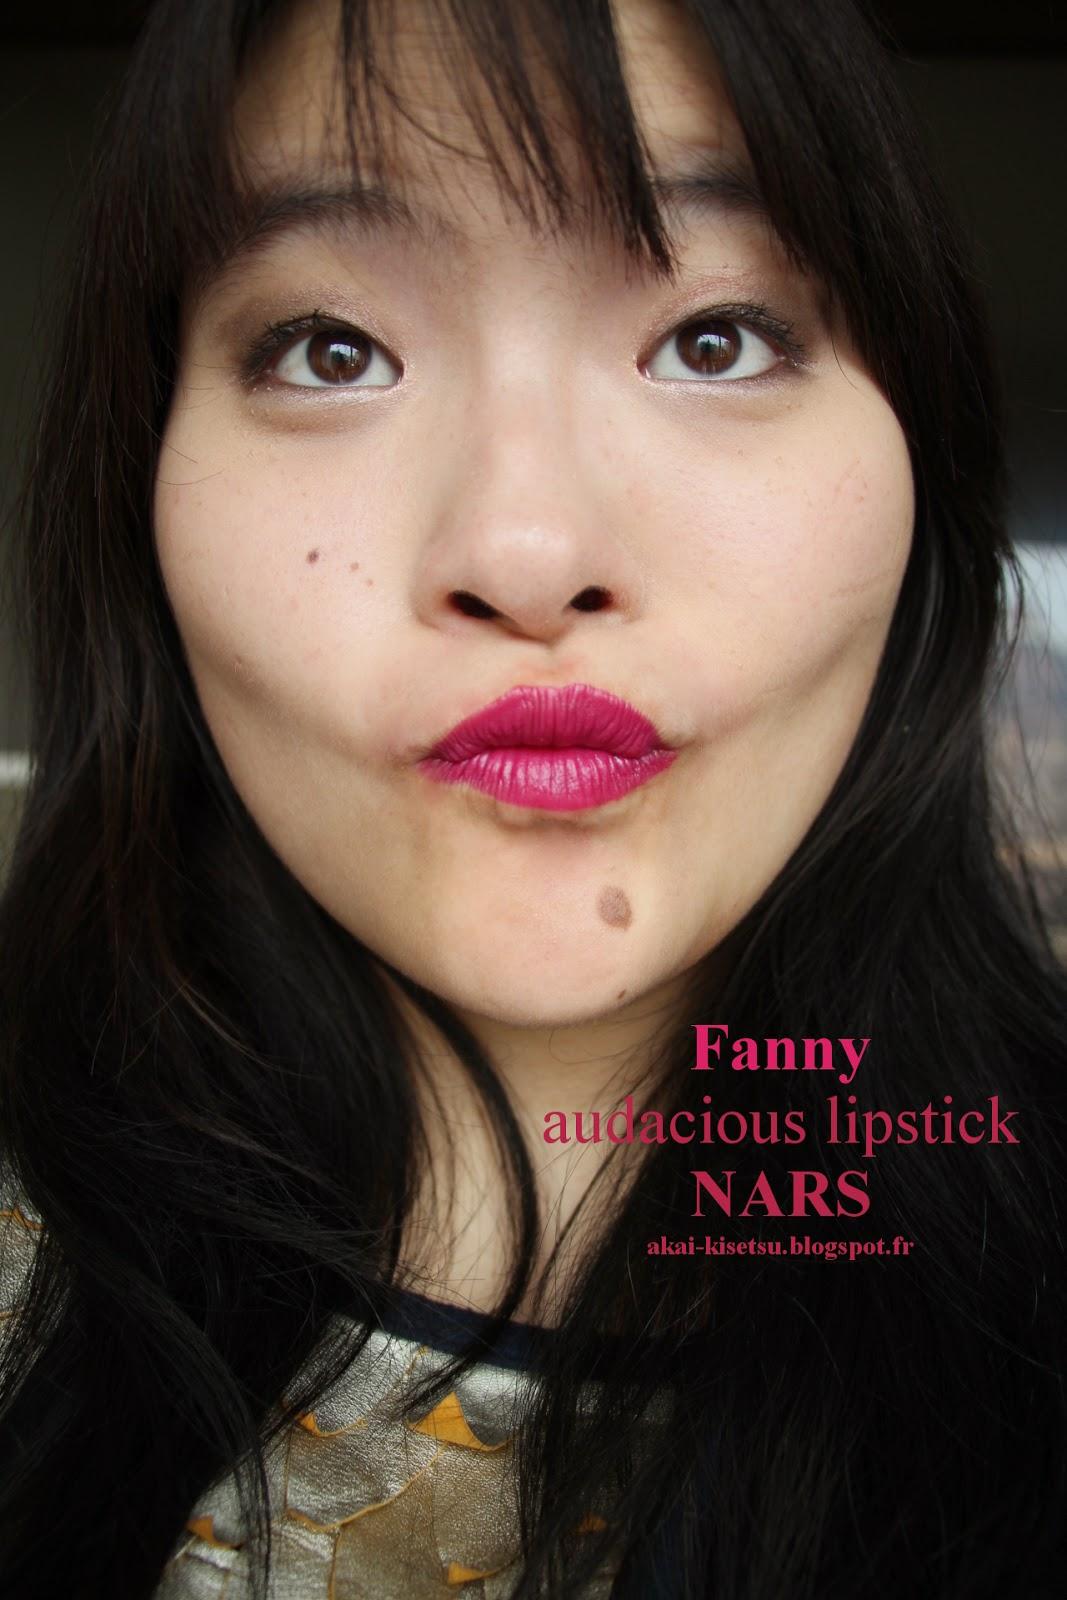 À la découverte des Audacious lipstick de chez NARS